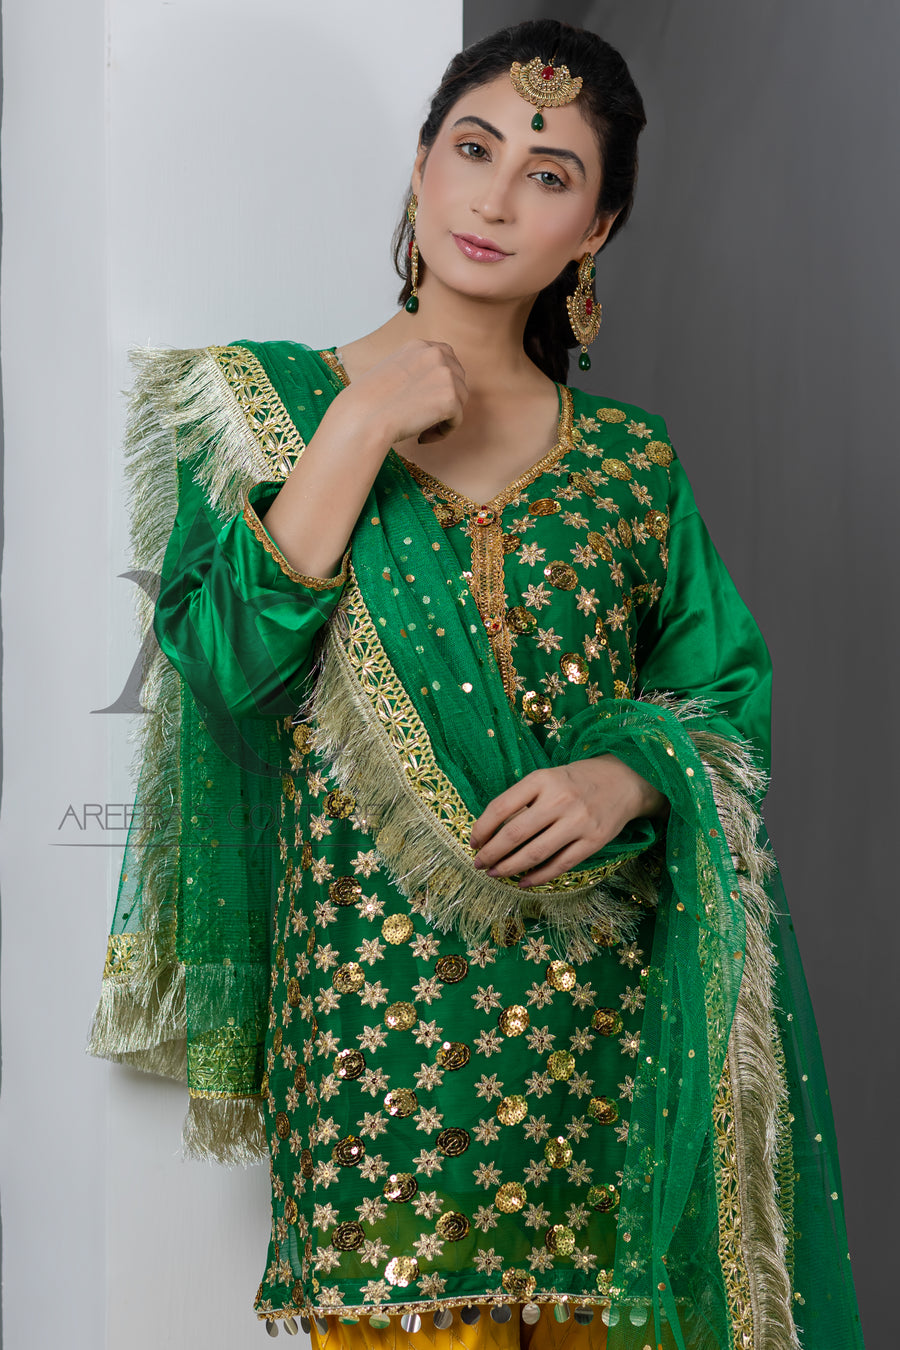 Silk mehndi gharaa suit- Areeba's Couture